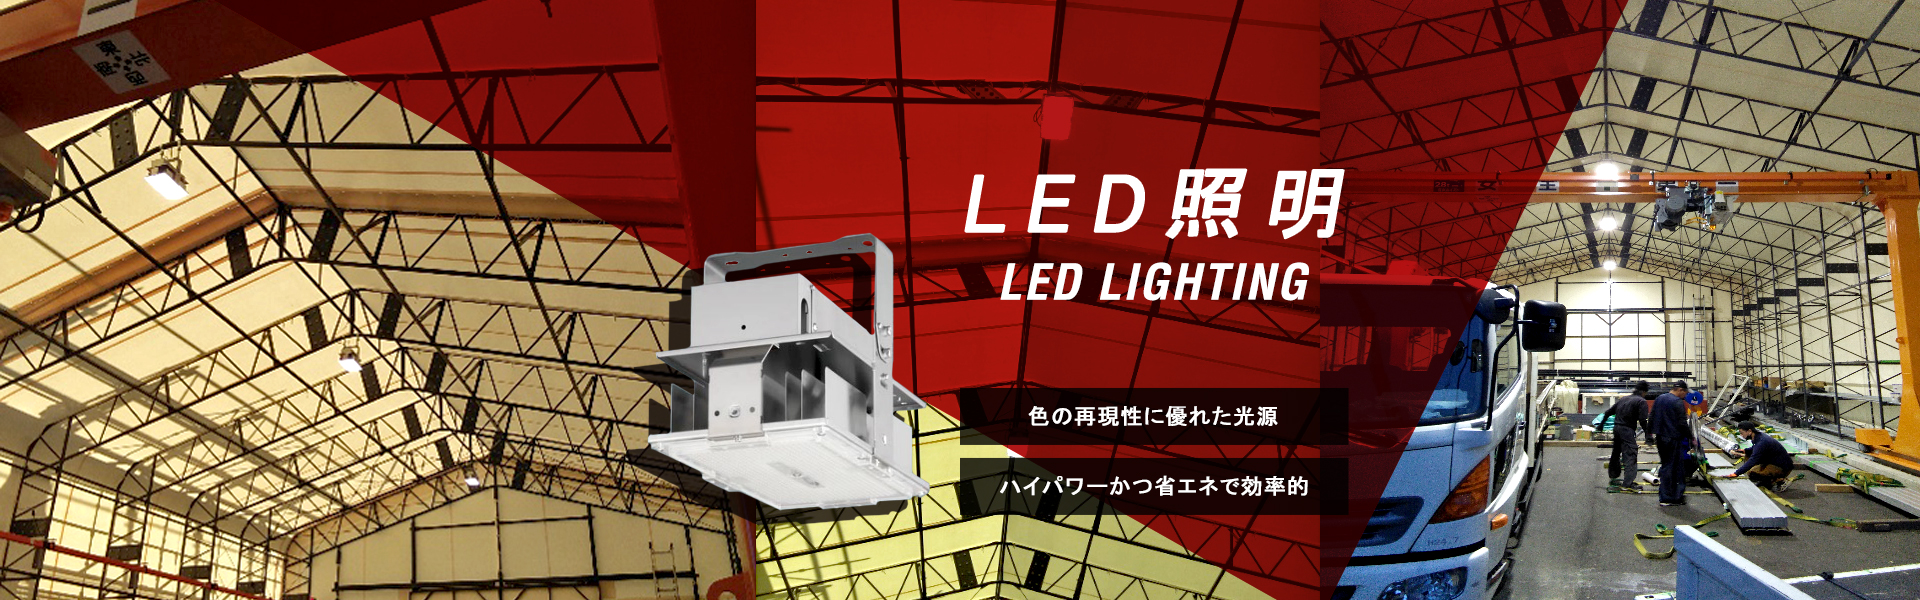 LED照明 色の再現性に優れた光源 ハイパワーかつ省エネで効率的